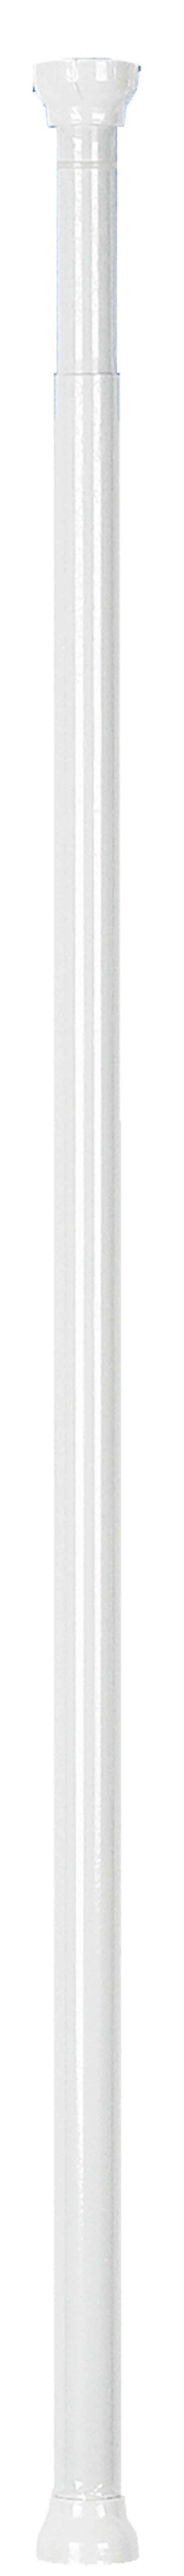 Duschvorhangstange »KRETA«, spirella, ausdrehbar, stufenlos verstellbare Teleskopstange zum Einspannen - kein Bohren - kratzfestes Aluminium, weiß glänzend, Ø 21 mm, Verstellbereich 75 - 125 cm